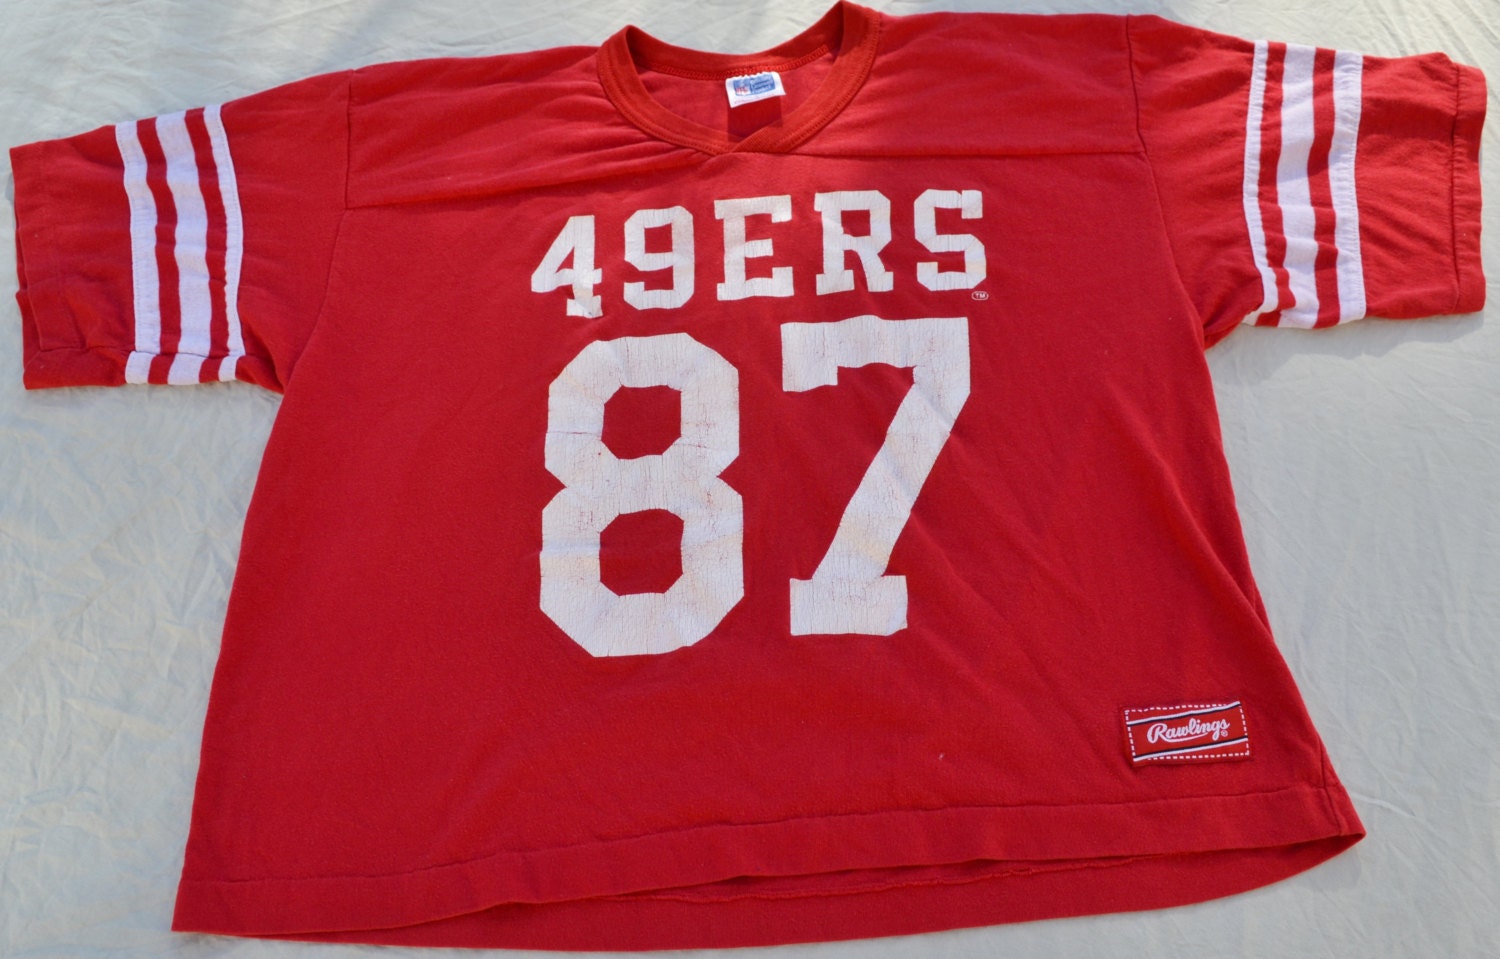 49ers jersey shirt